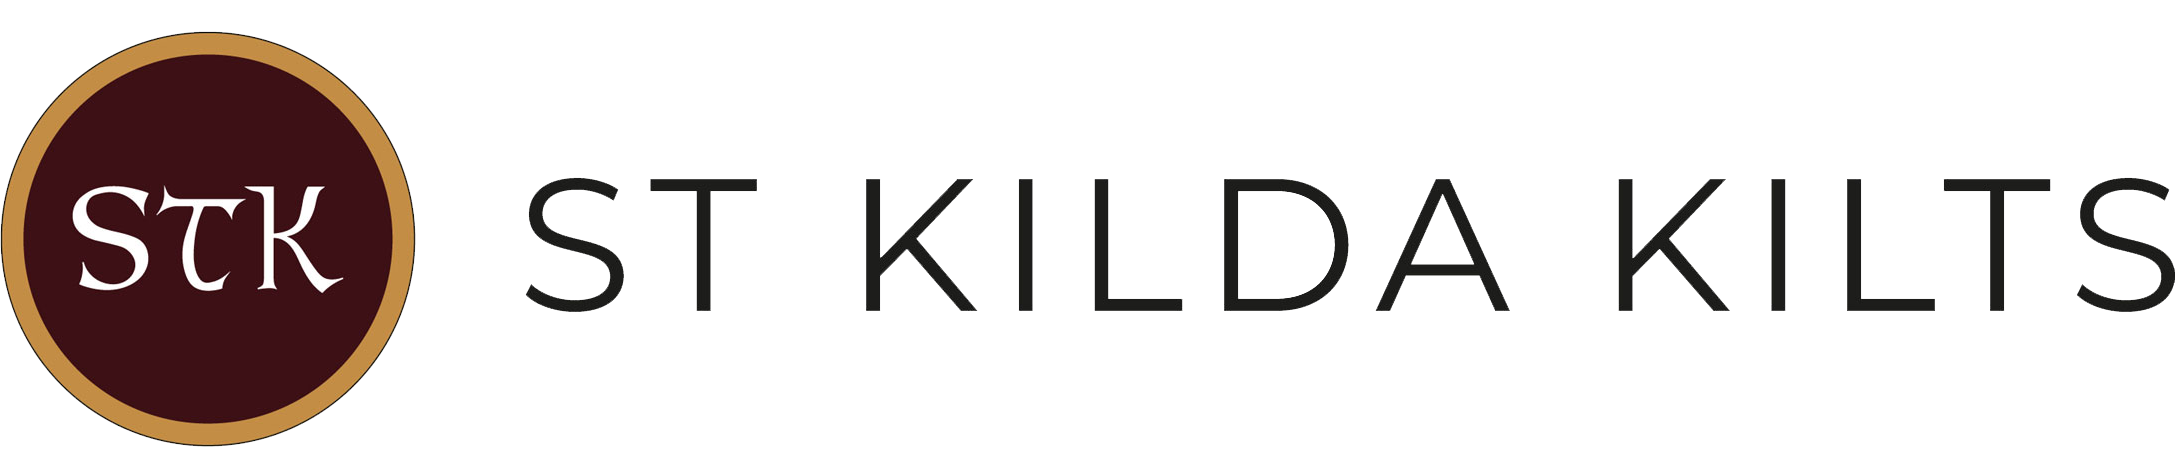 St Kilda Kilts & Scottish Gifts